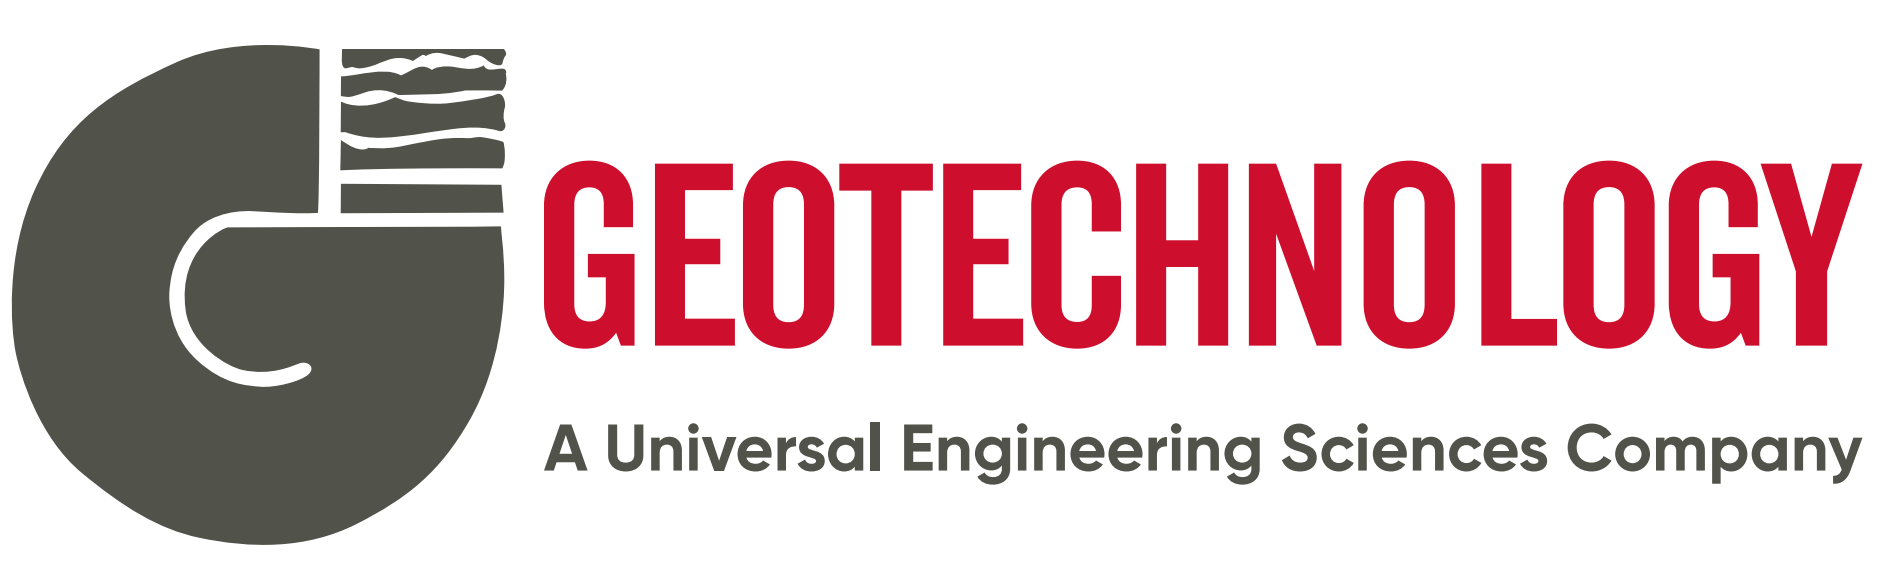 Geotechnology logo